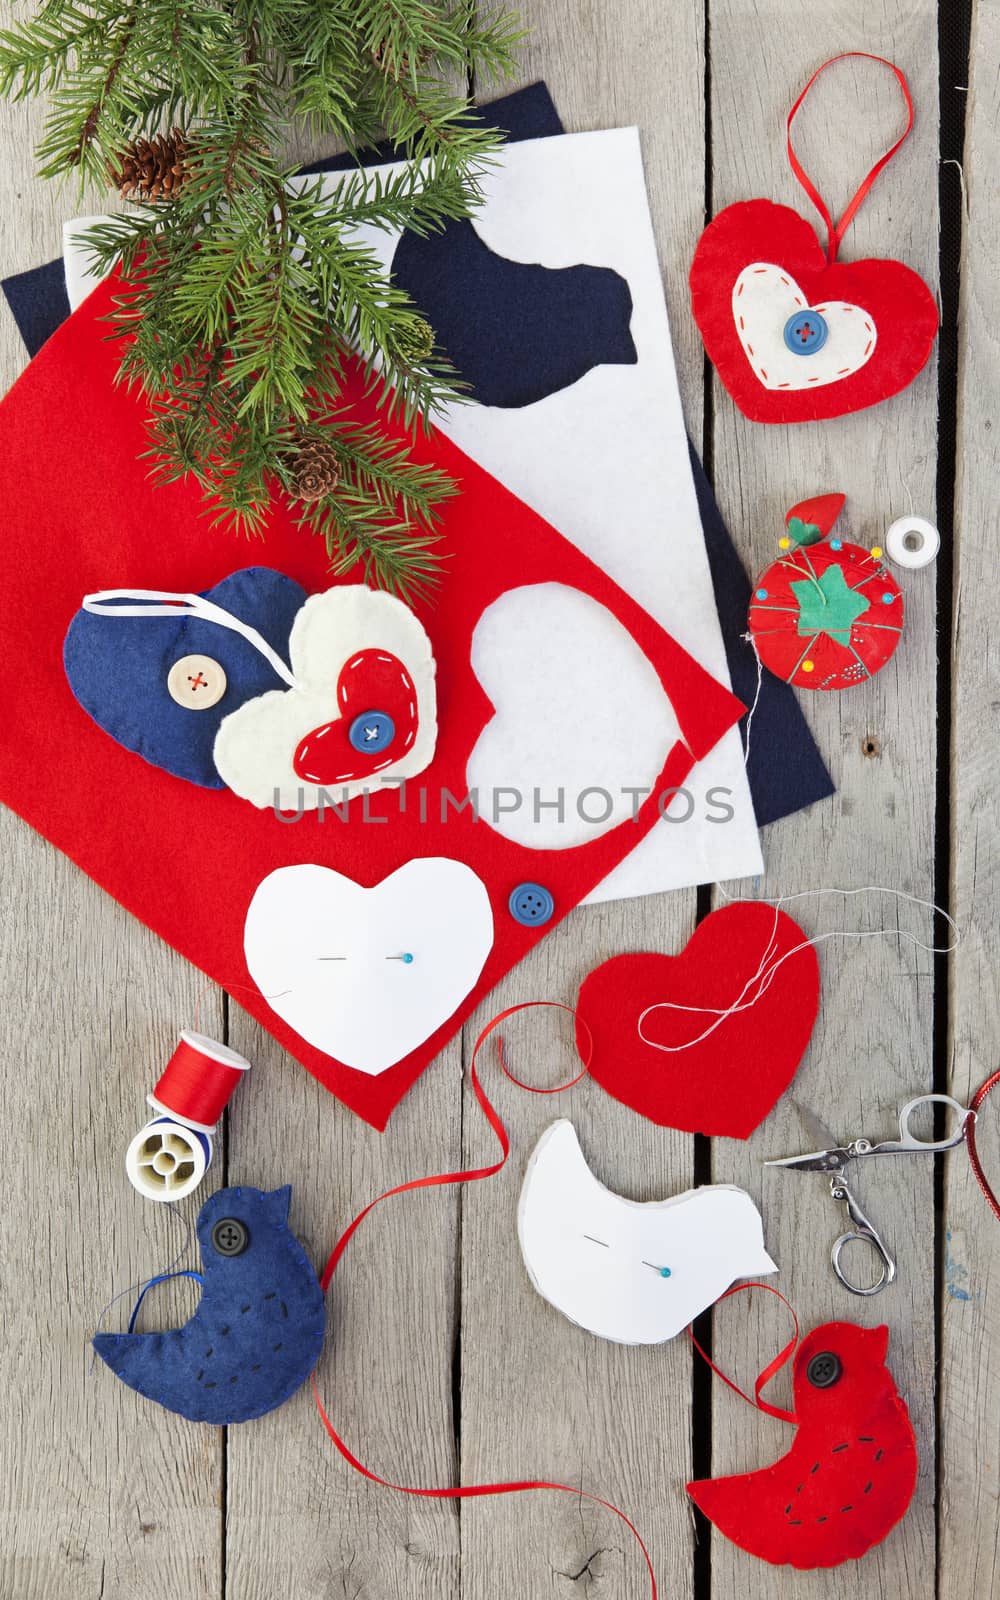 Homemade Felt Christmas Ornaments by songbird839